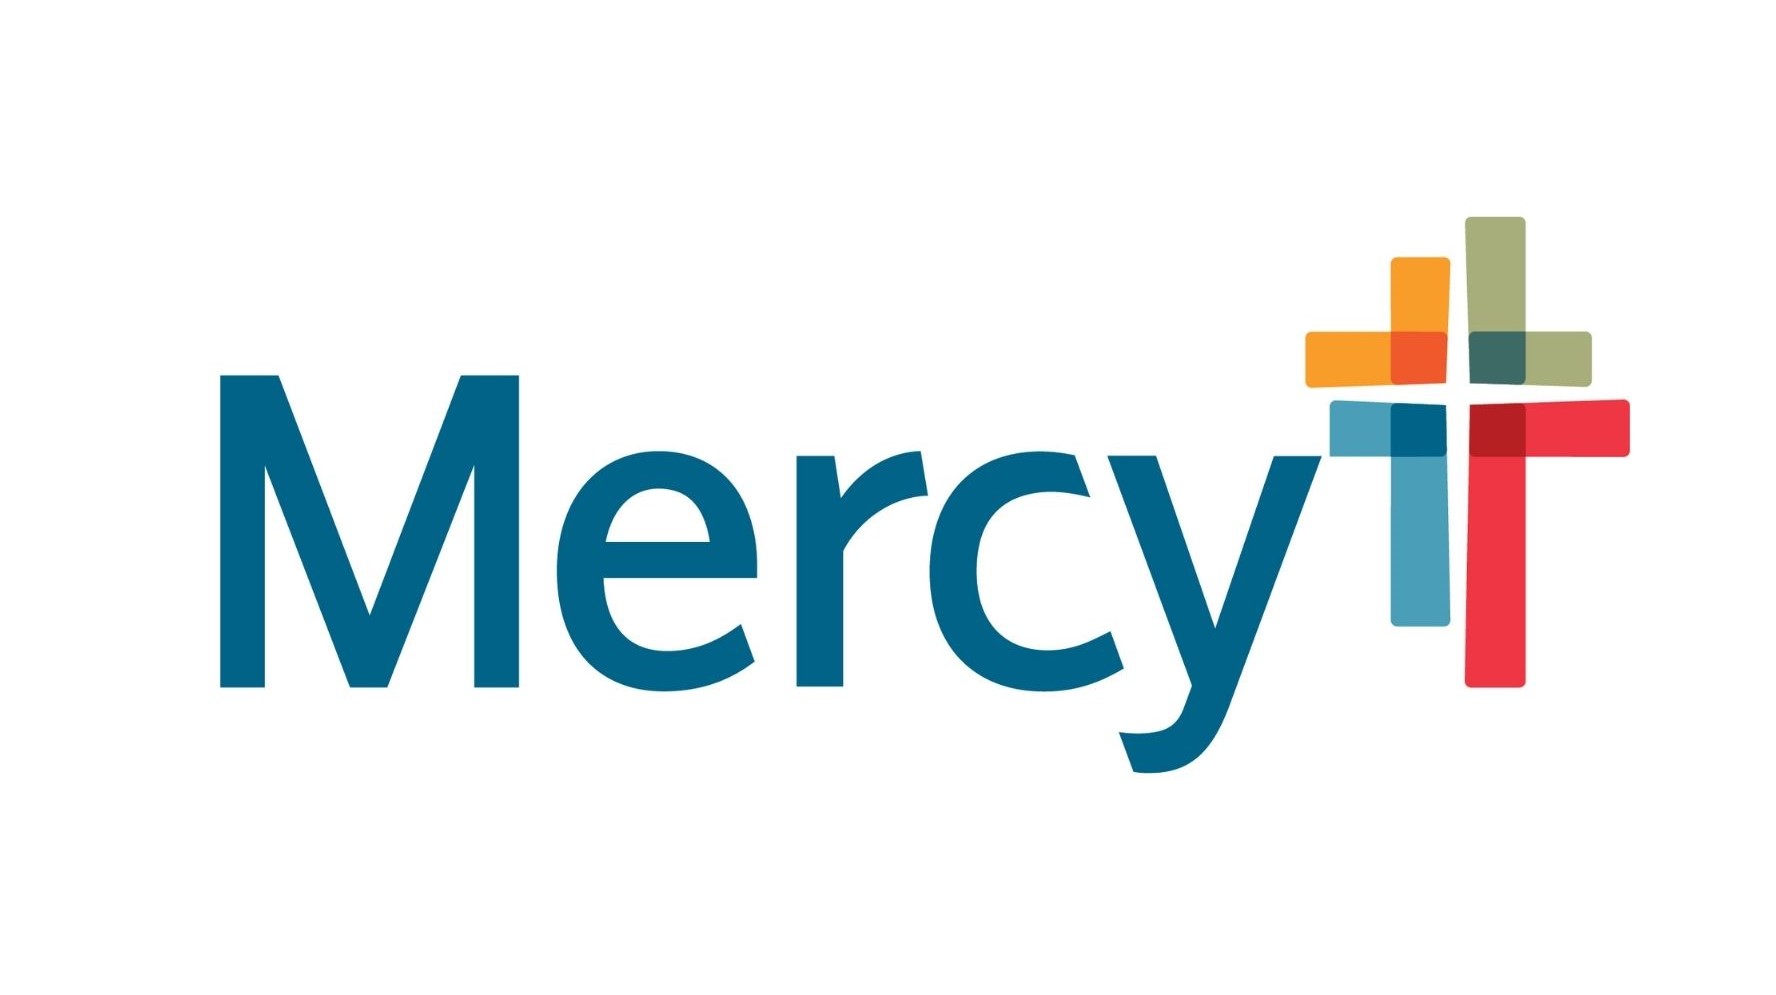 2. Mercy (Platinum)